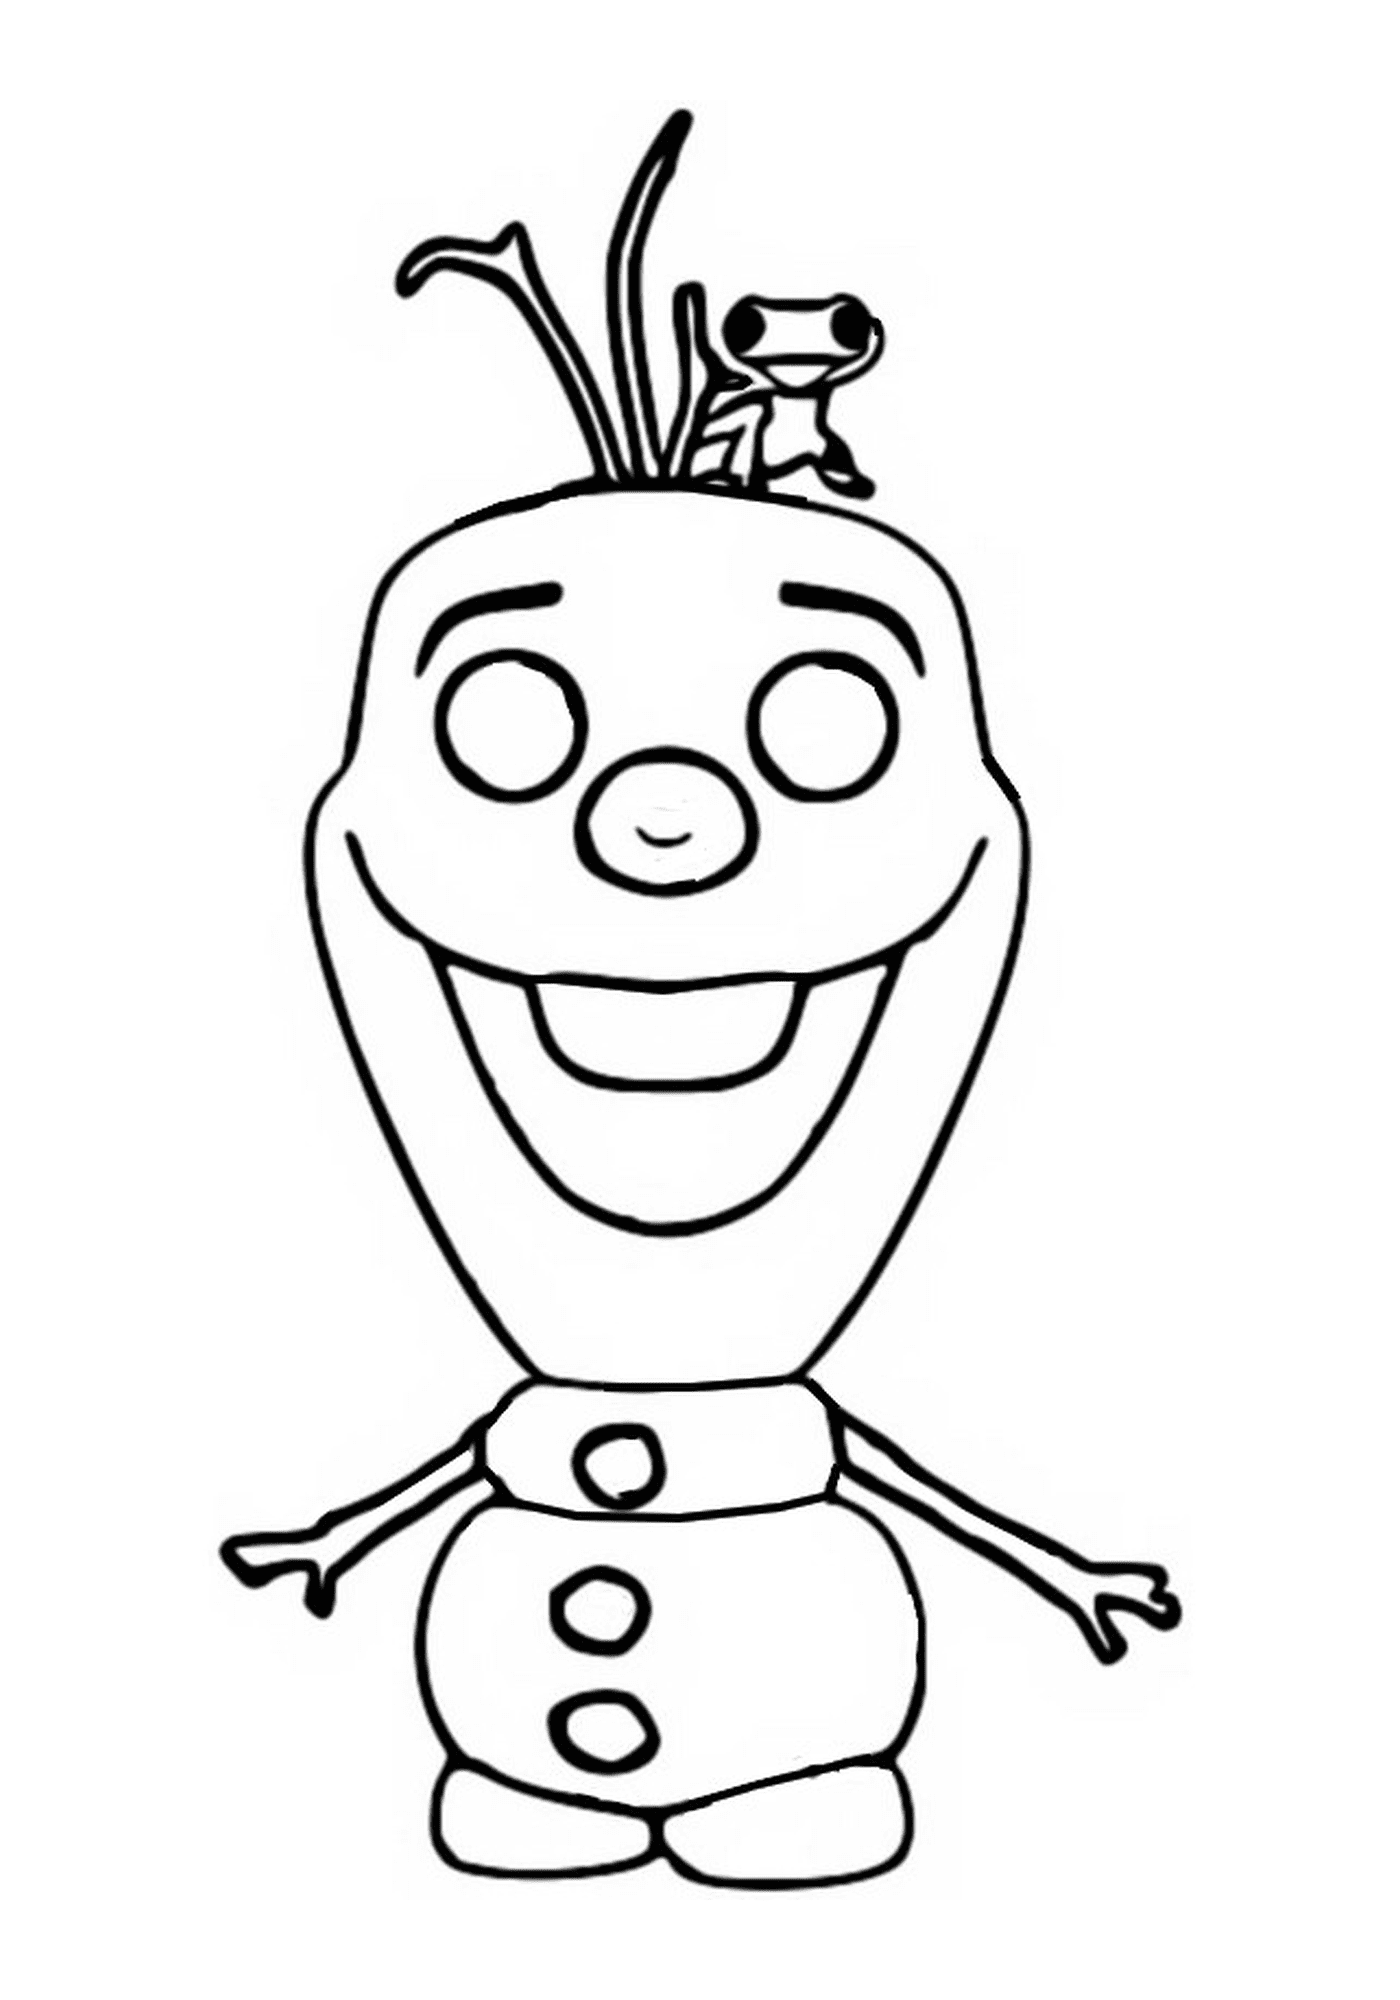  Olaf, Frozen 2, Zeichentrickfigur lächelnd 